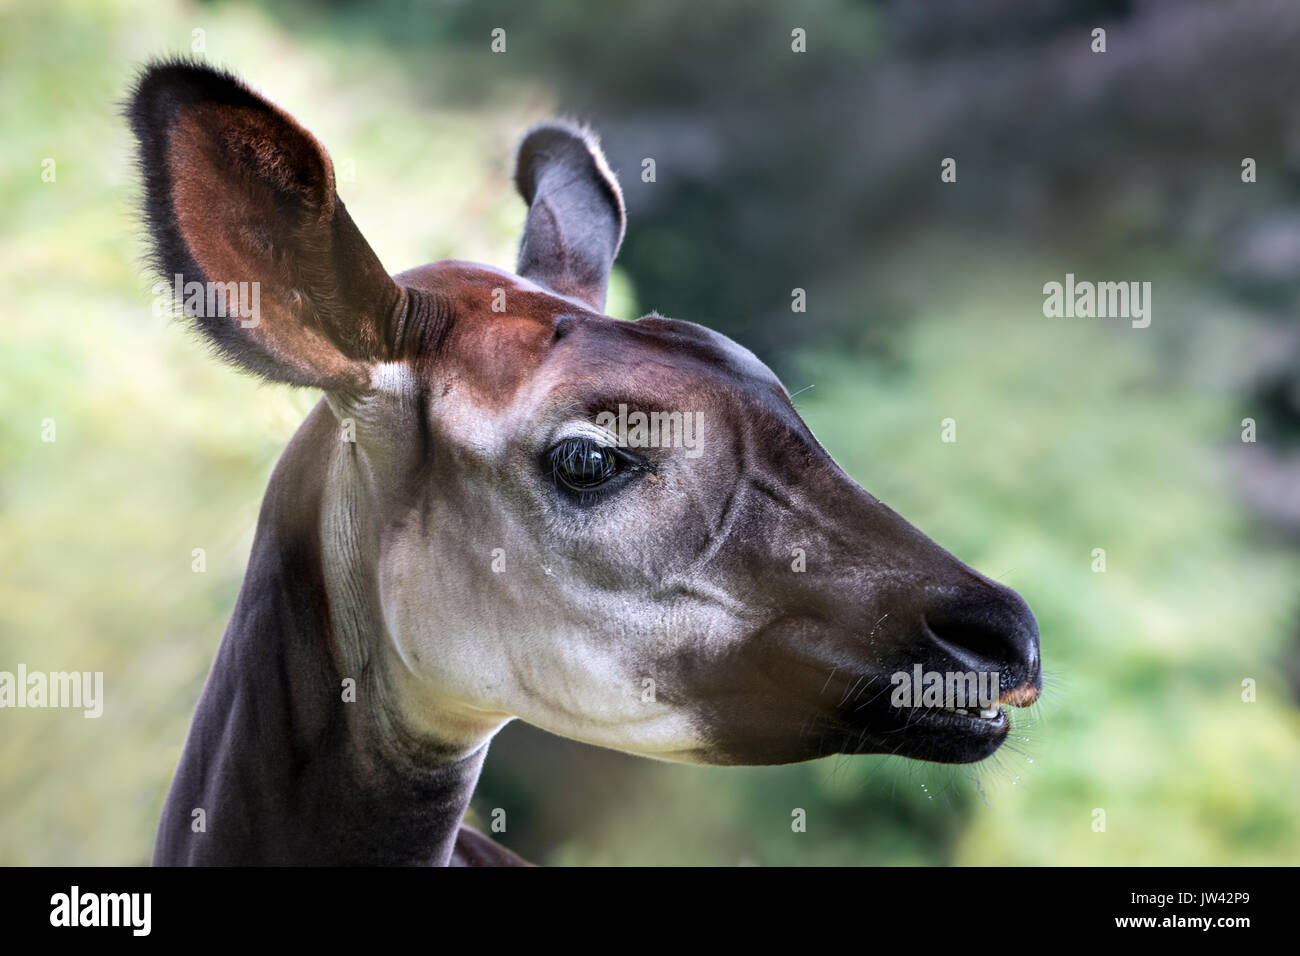 Okapi (Kopf) Stockfoto